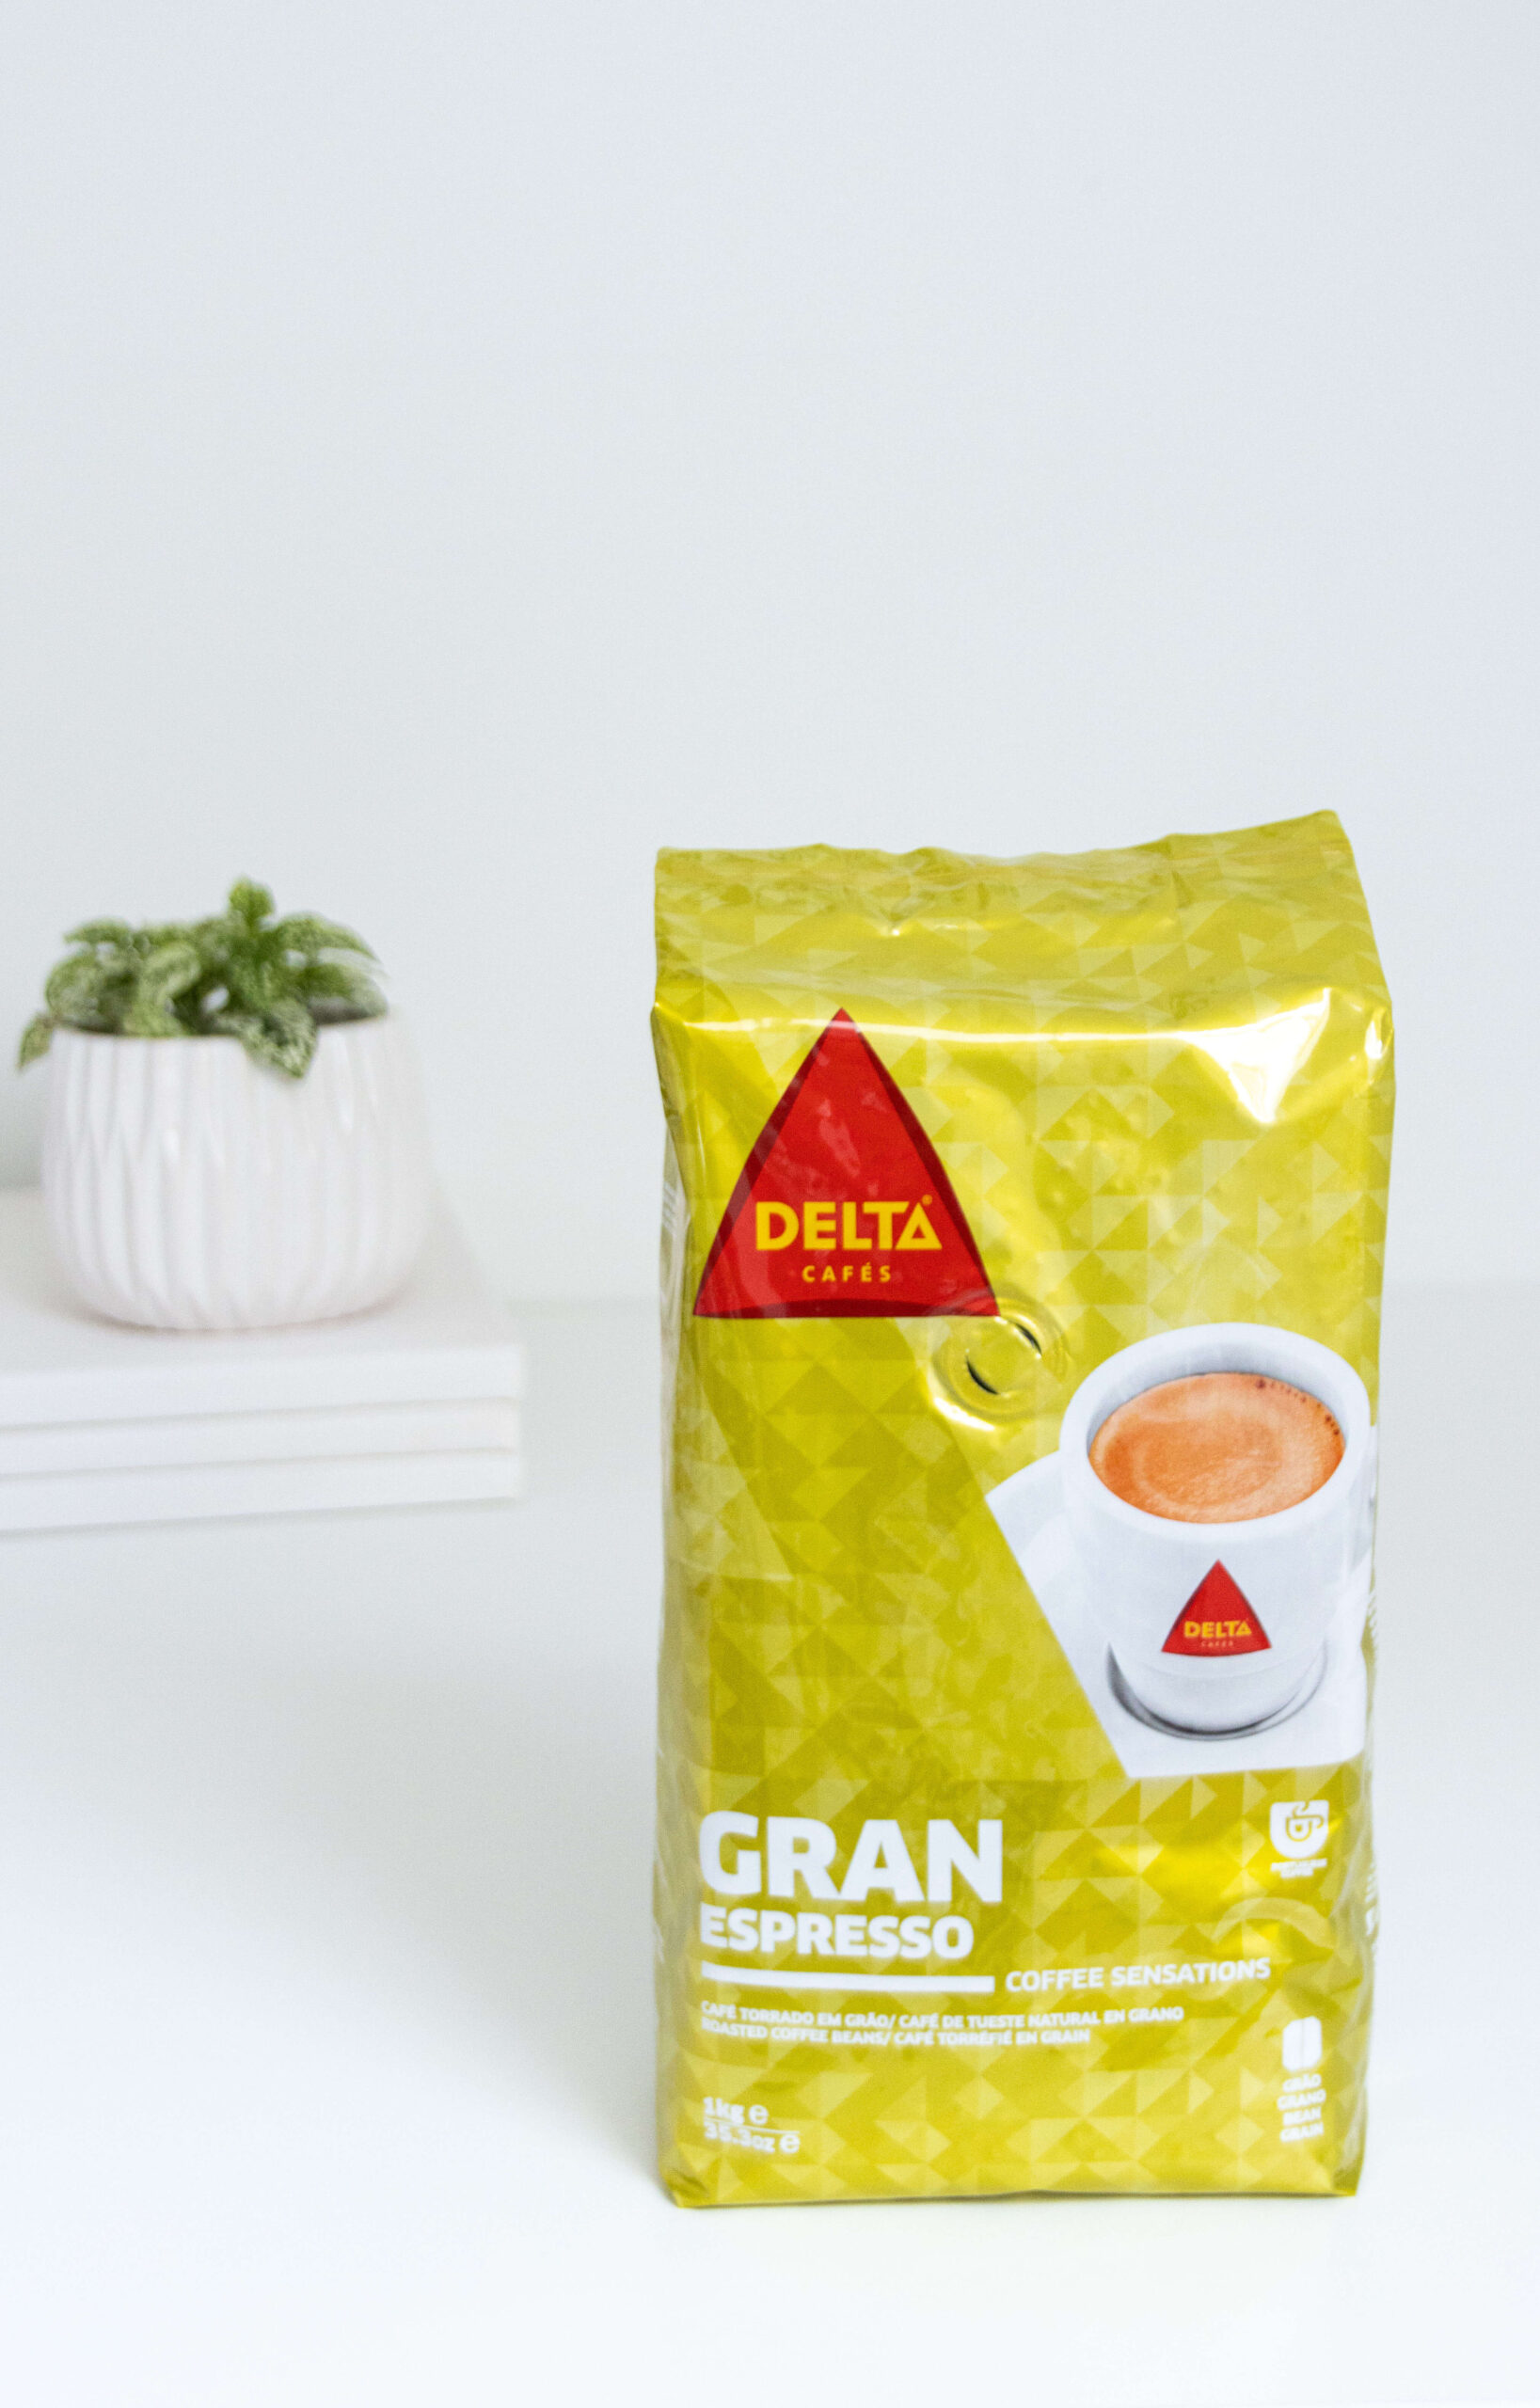 Café en grains Delta Gran Crema (1kg)